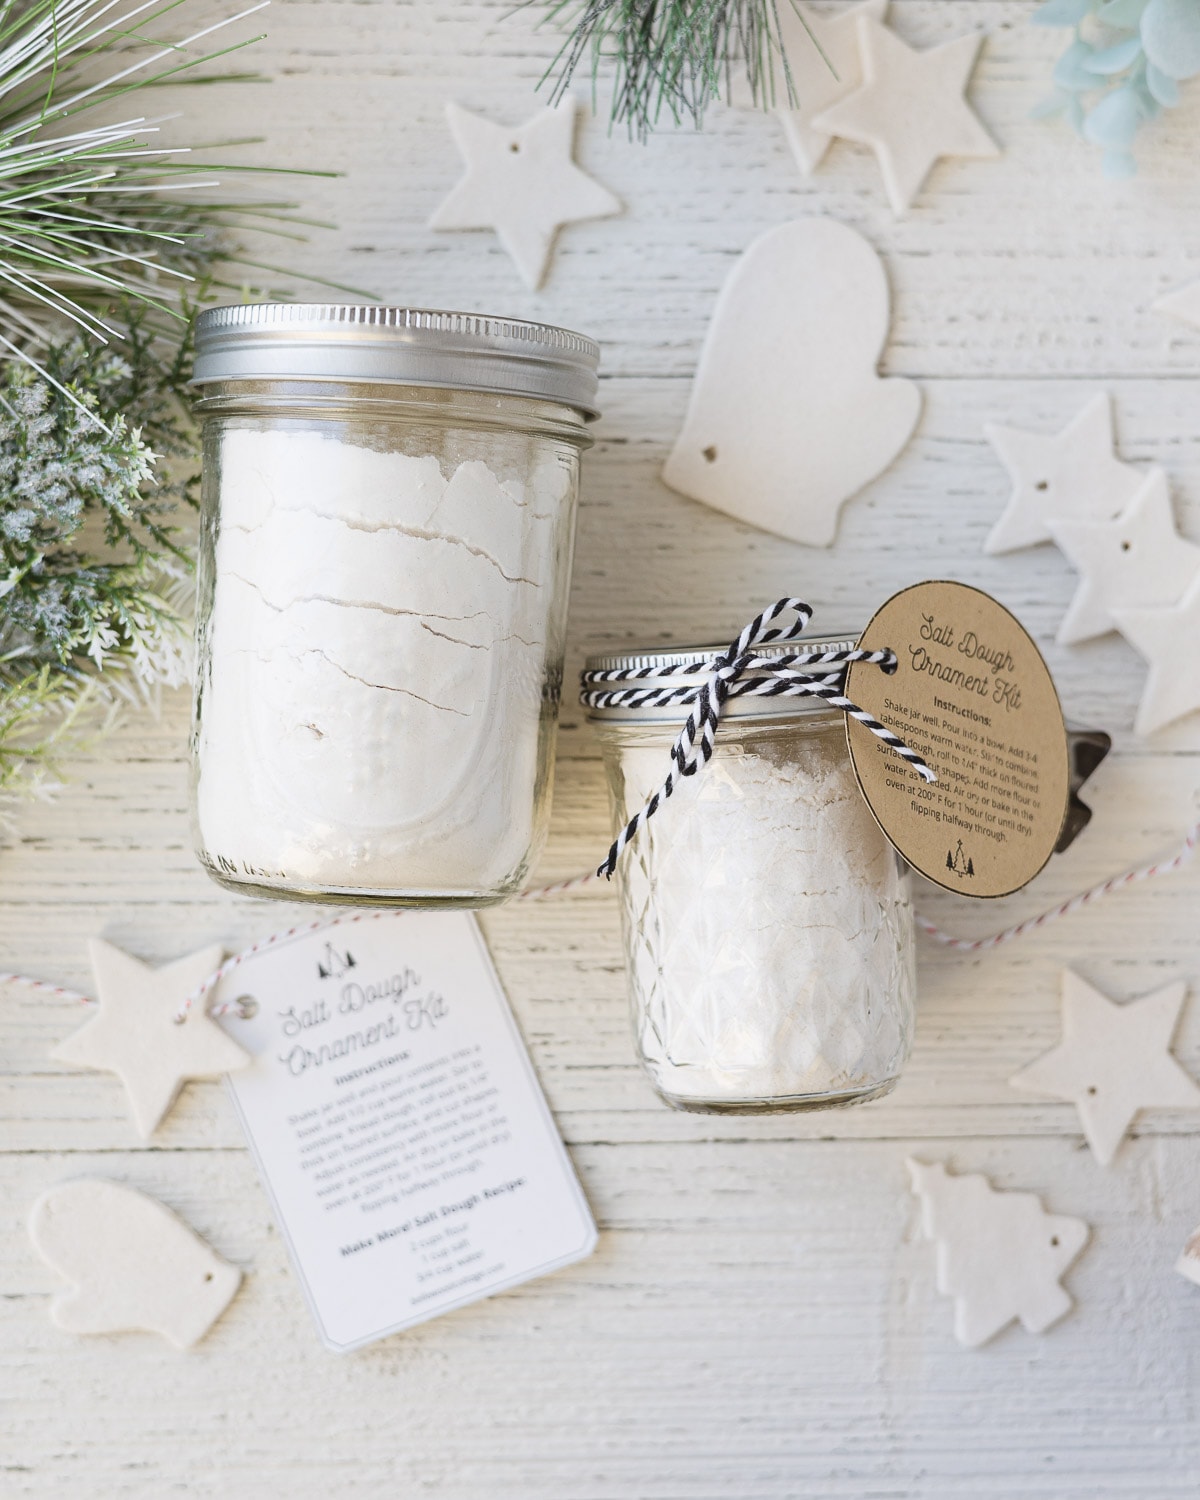 Two salt dough mix jars surrounded by dried salt dough ornaments.